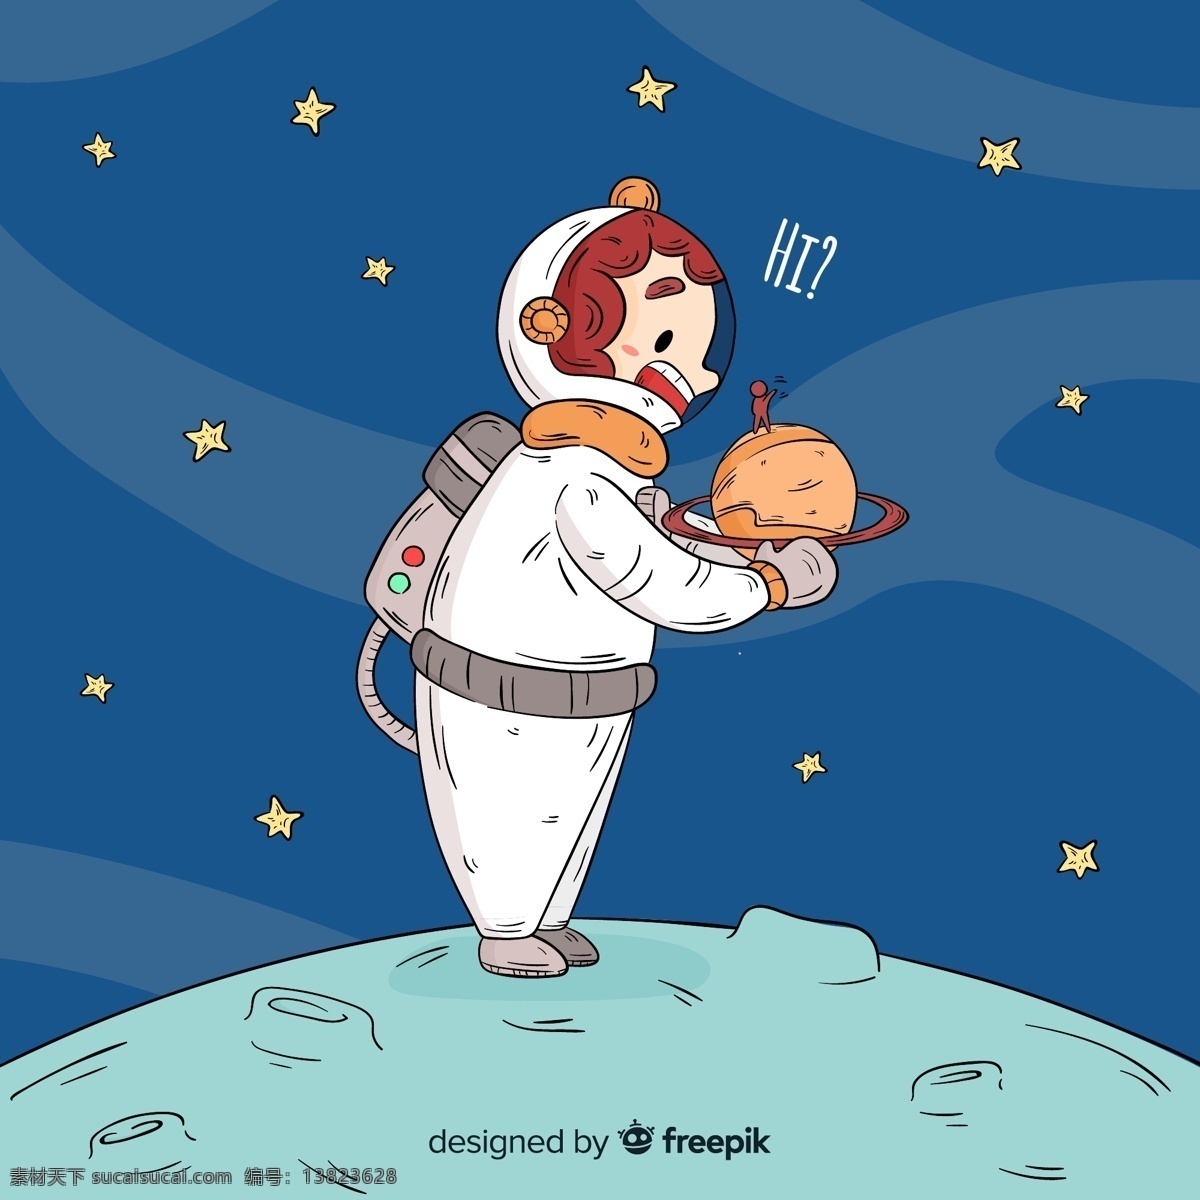 彩绘 抱住 土星 宇航员 语言气泡 探索 太空 科技 打招呼 外星人 抱 动漫动画 动漫人物